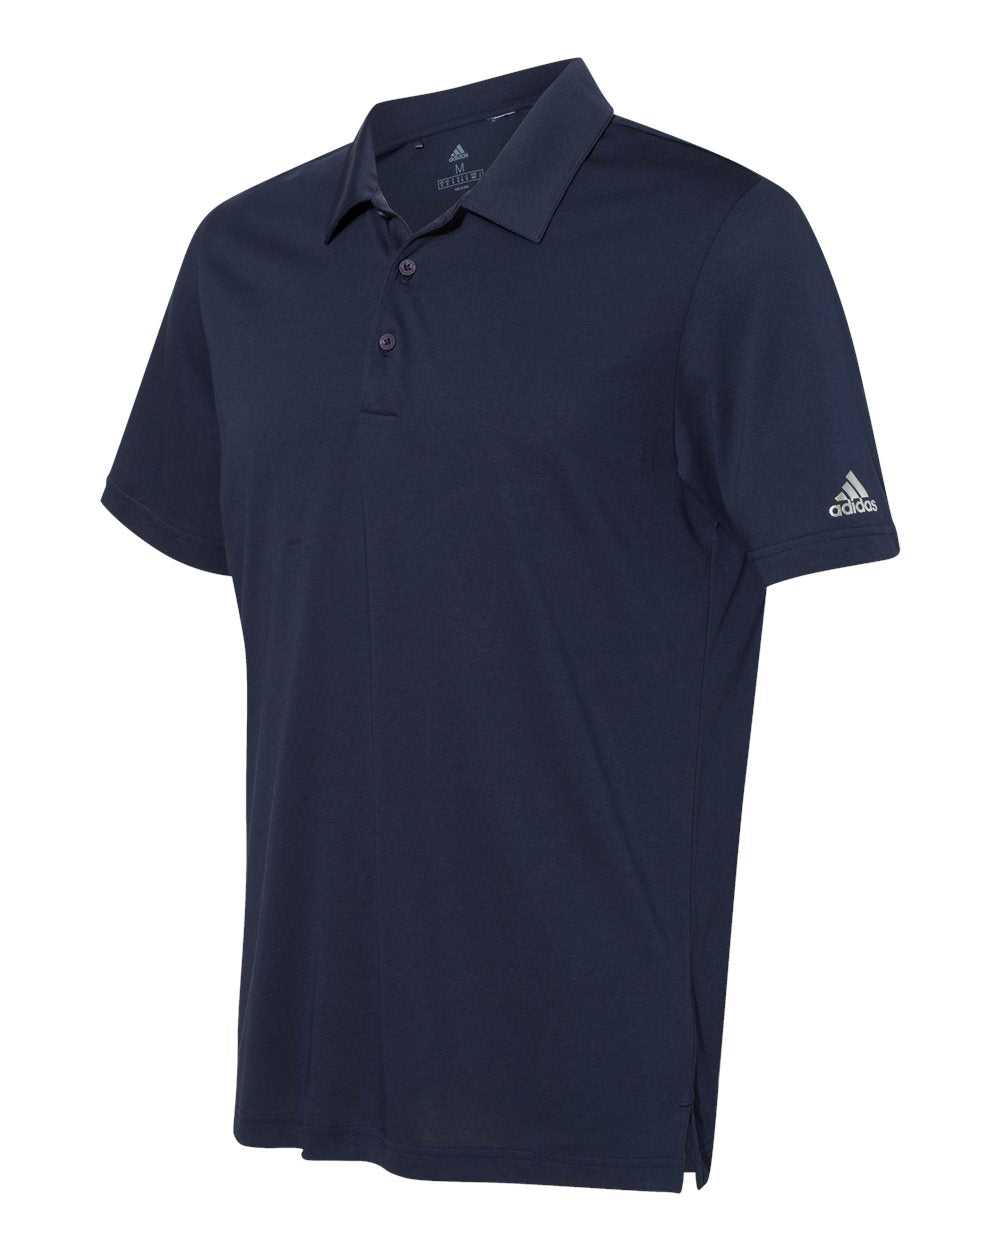 Adidas A322 Cotton Blend Sport Shirt - Navy - HIT a Double